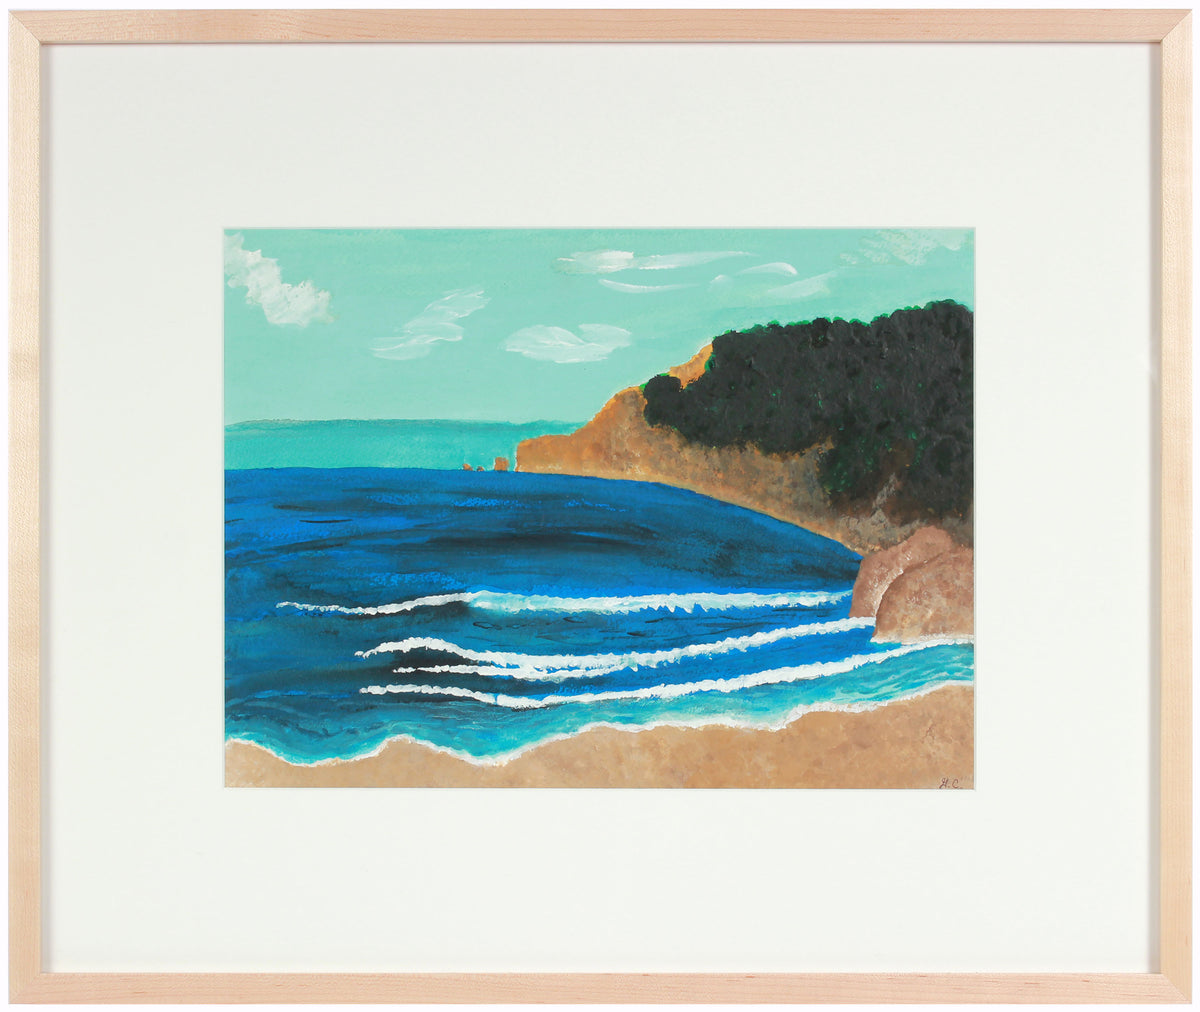 &lt;i&gt;Lost Coast&lt;/i&gt; &lt;br&gt;2018 Watercolor &amp; Gouache &lt;br&gt;&lt;br&gt;#A4437